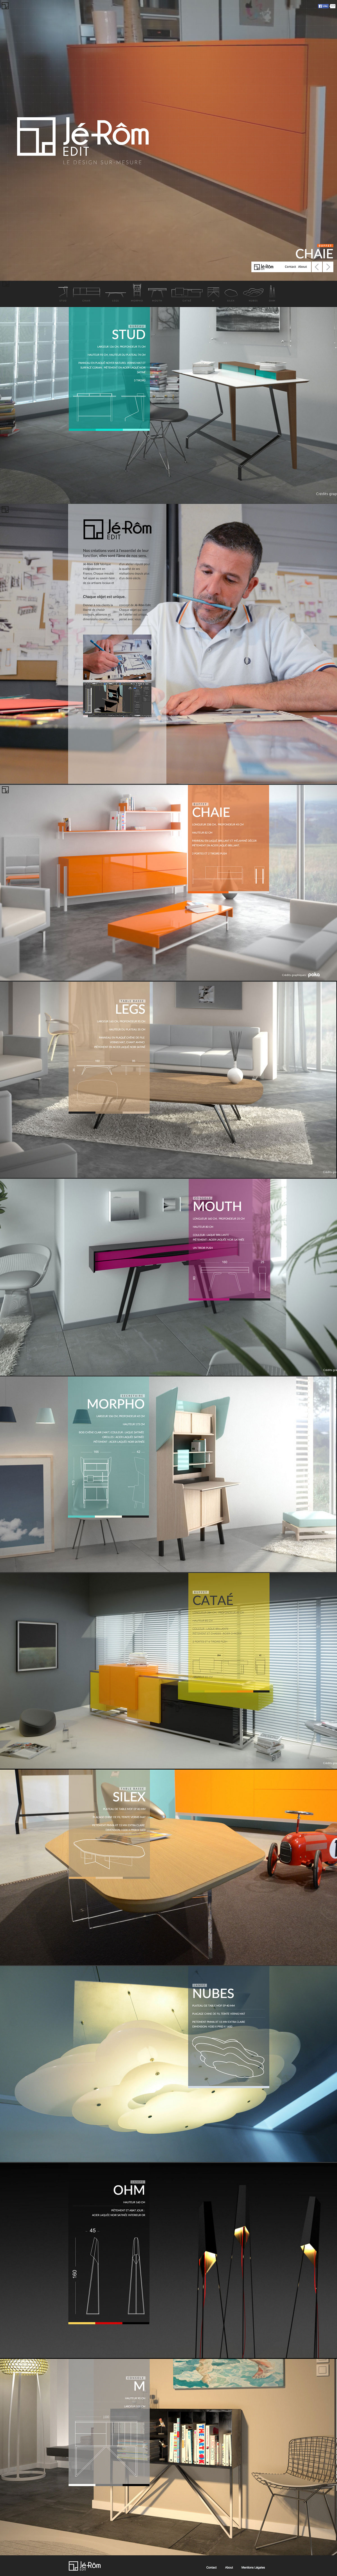 Adobe Portfolio furniture designer